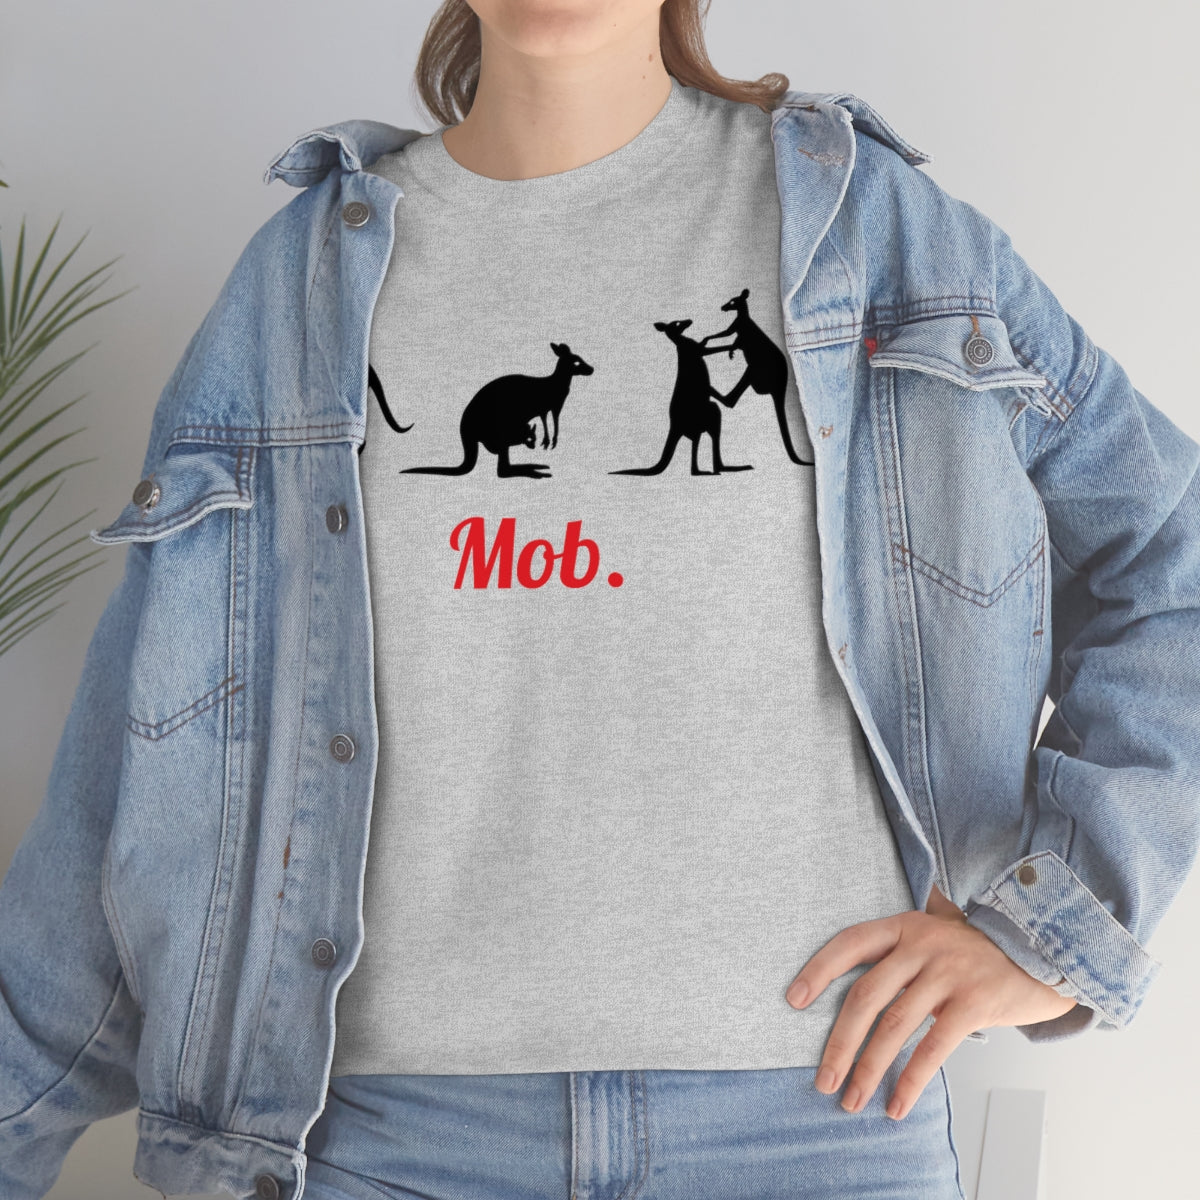 Mob of Kangaroos T-shirt